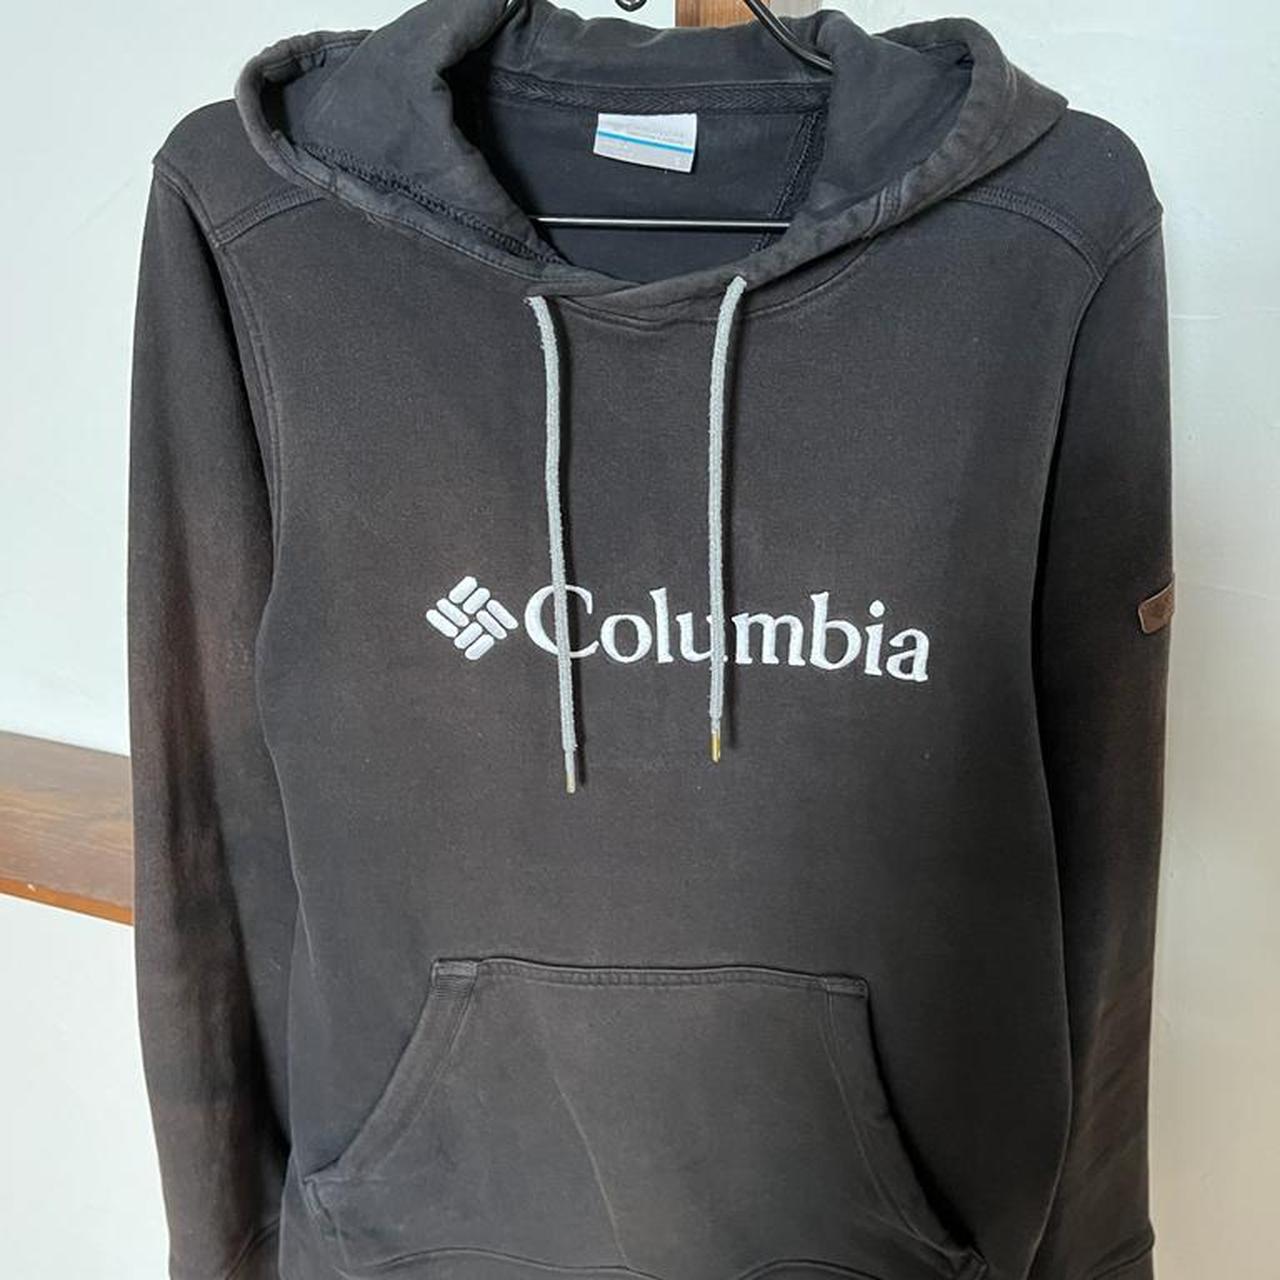 Columbia Black hoody - Depop